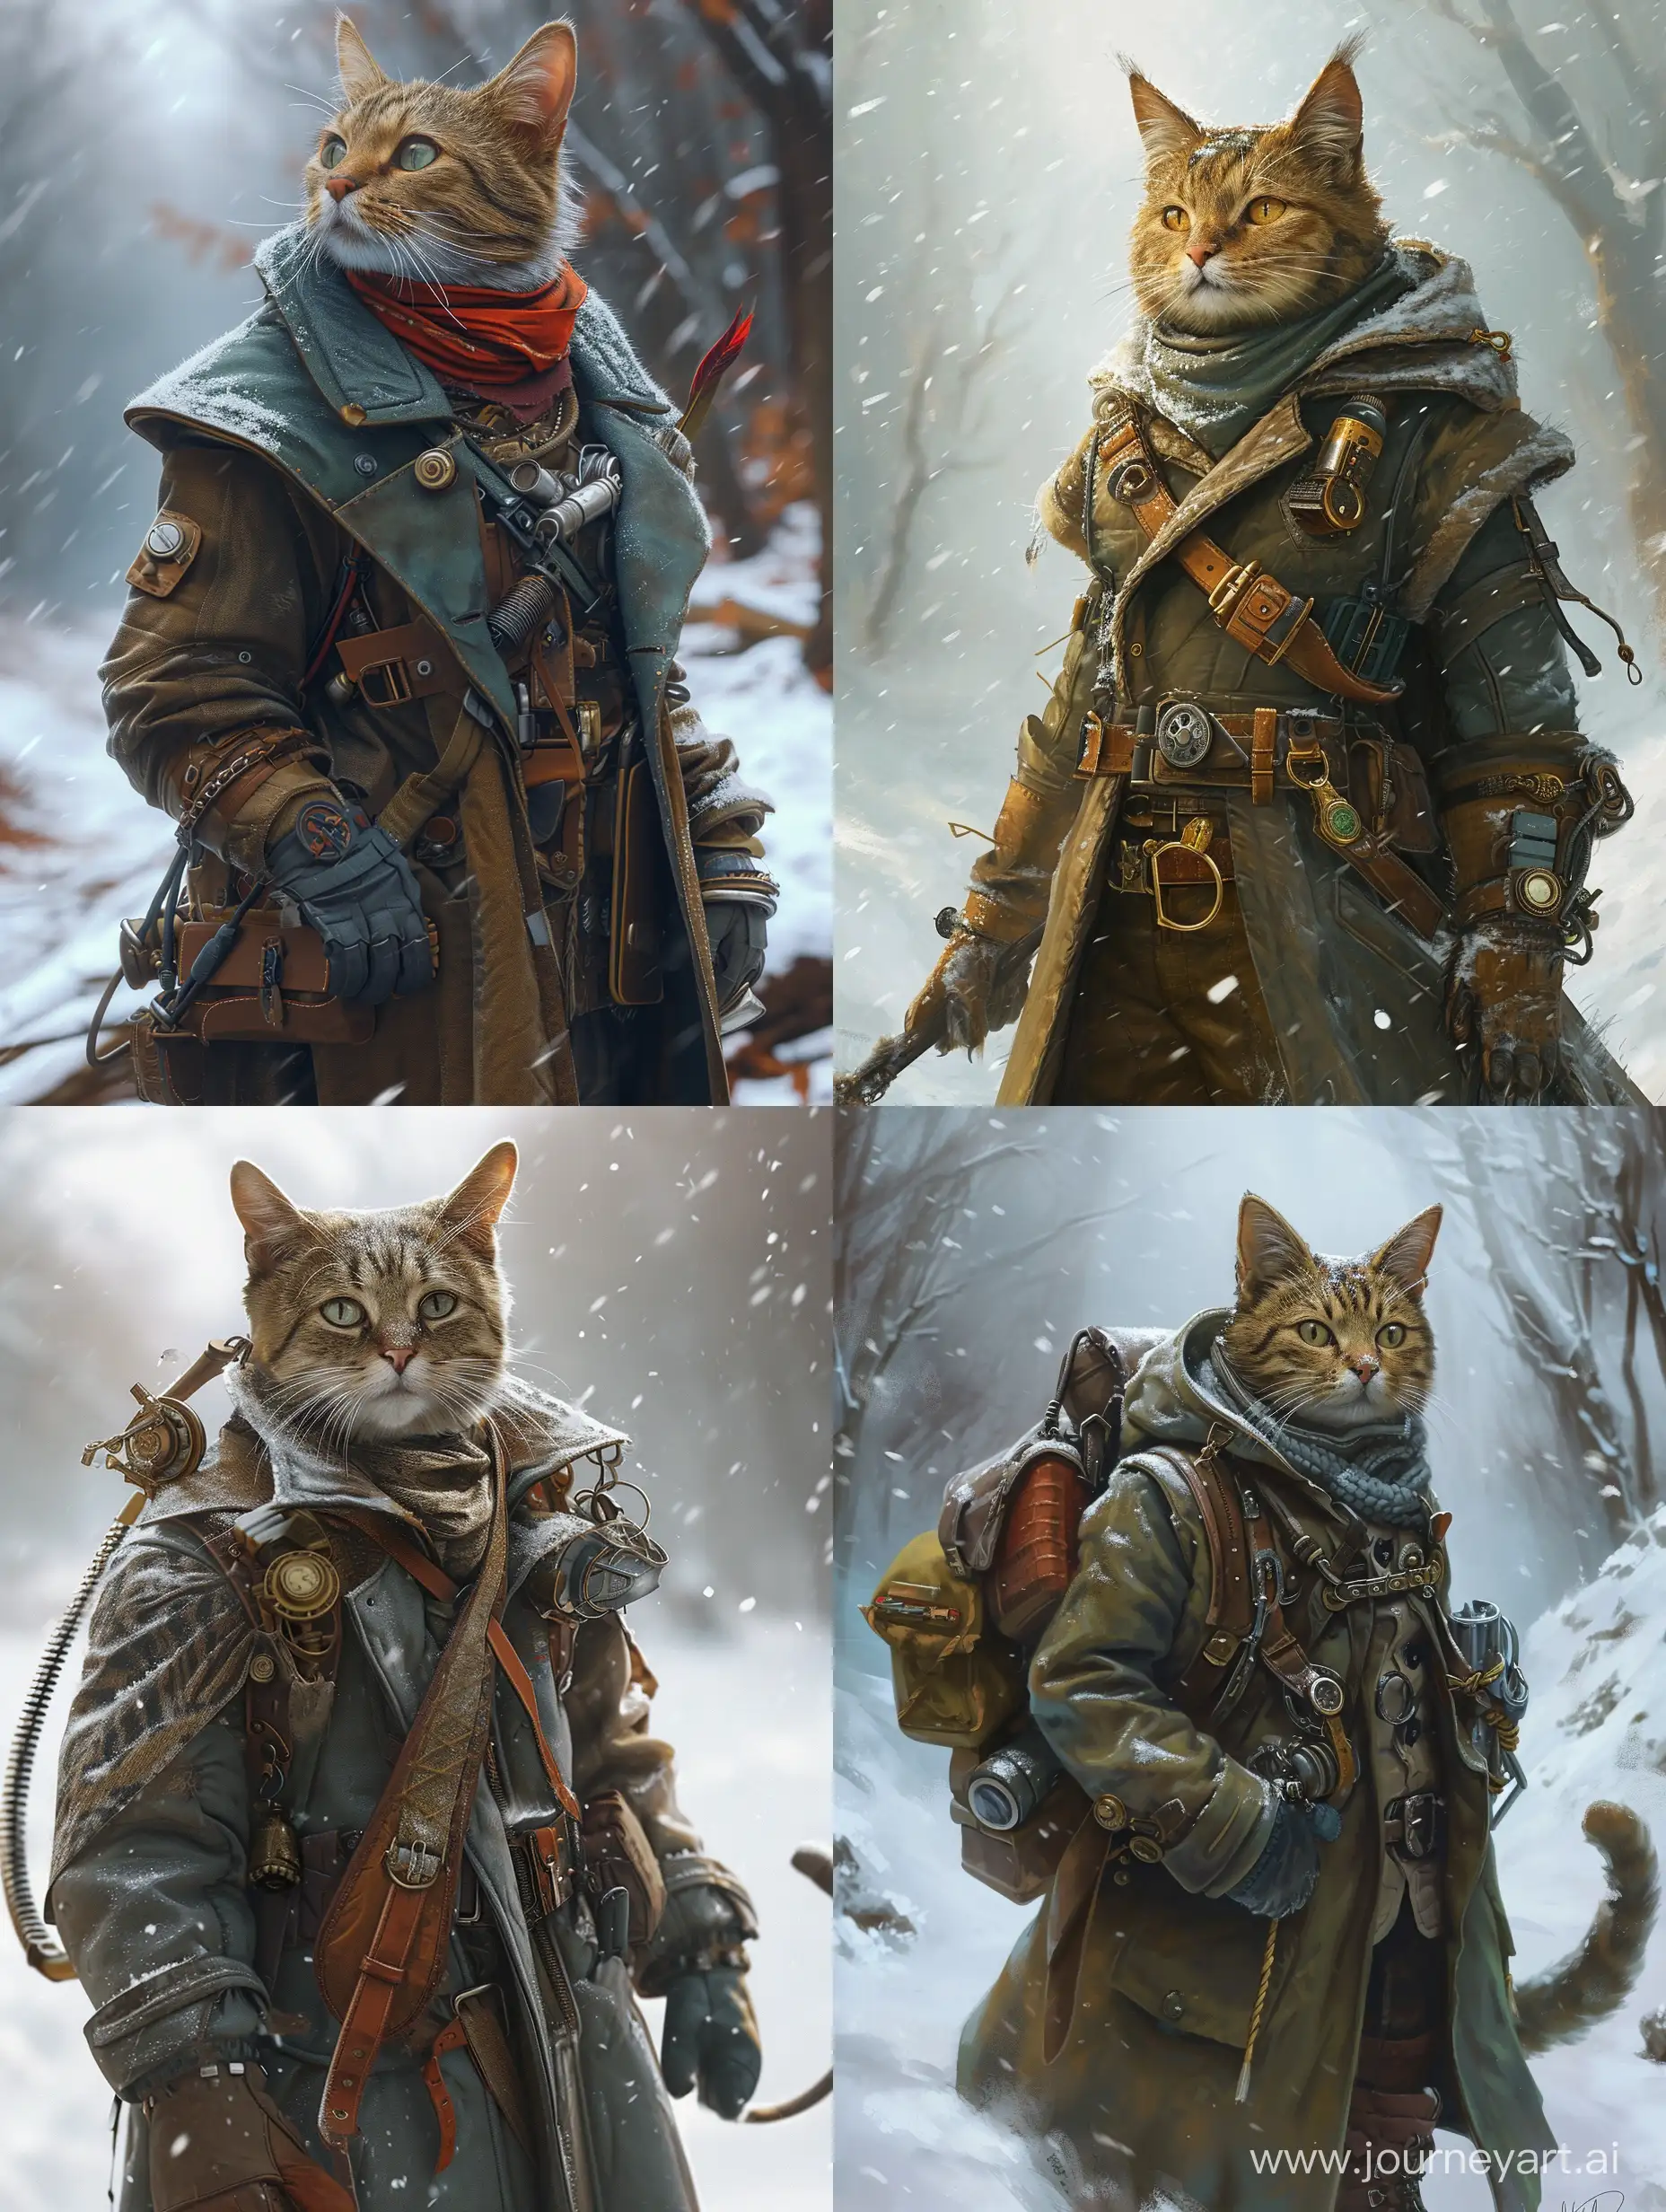 Steampunk-Cat-Adventurer-in-Winter-Wonderland-with-Survival-Gear